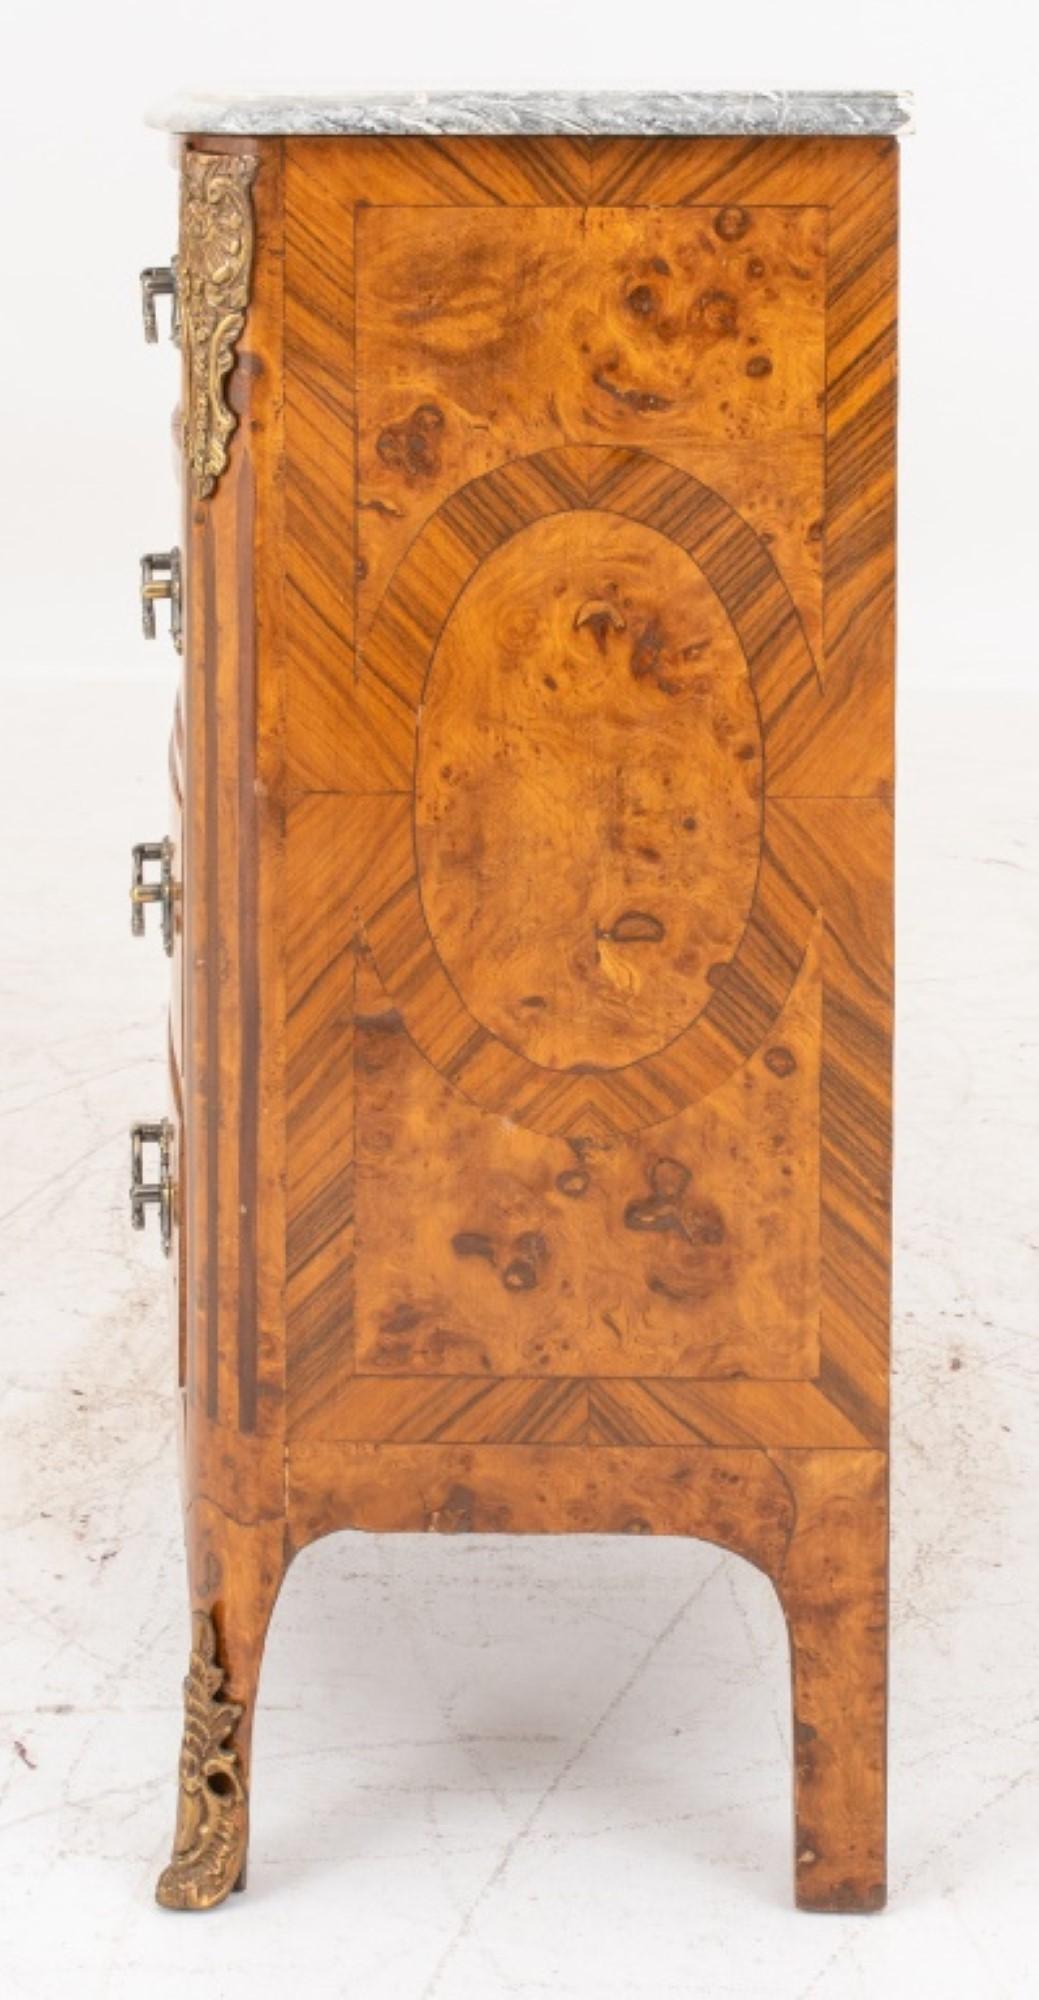 Commode de style transitionnel Louis XV / XVI à quatre tiroirs en placage de marqueterie avec chutes, tirettes et sabots en laiton doré.

Concessionnaire : S138XX